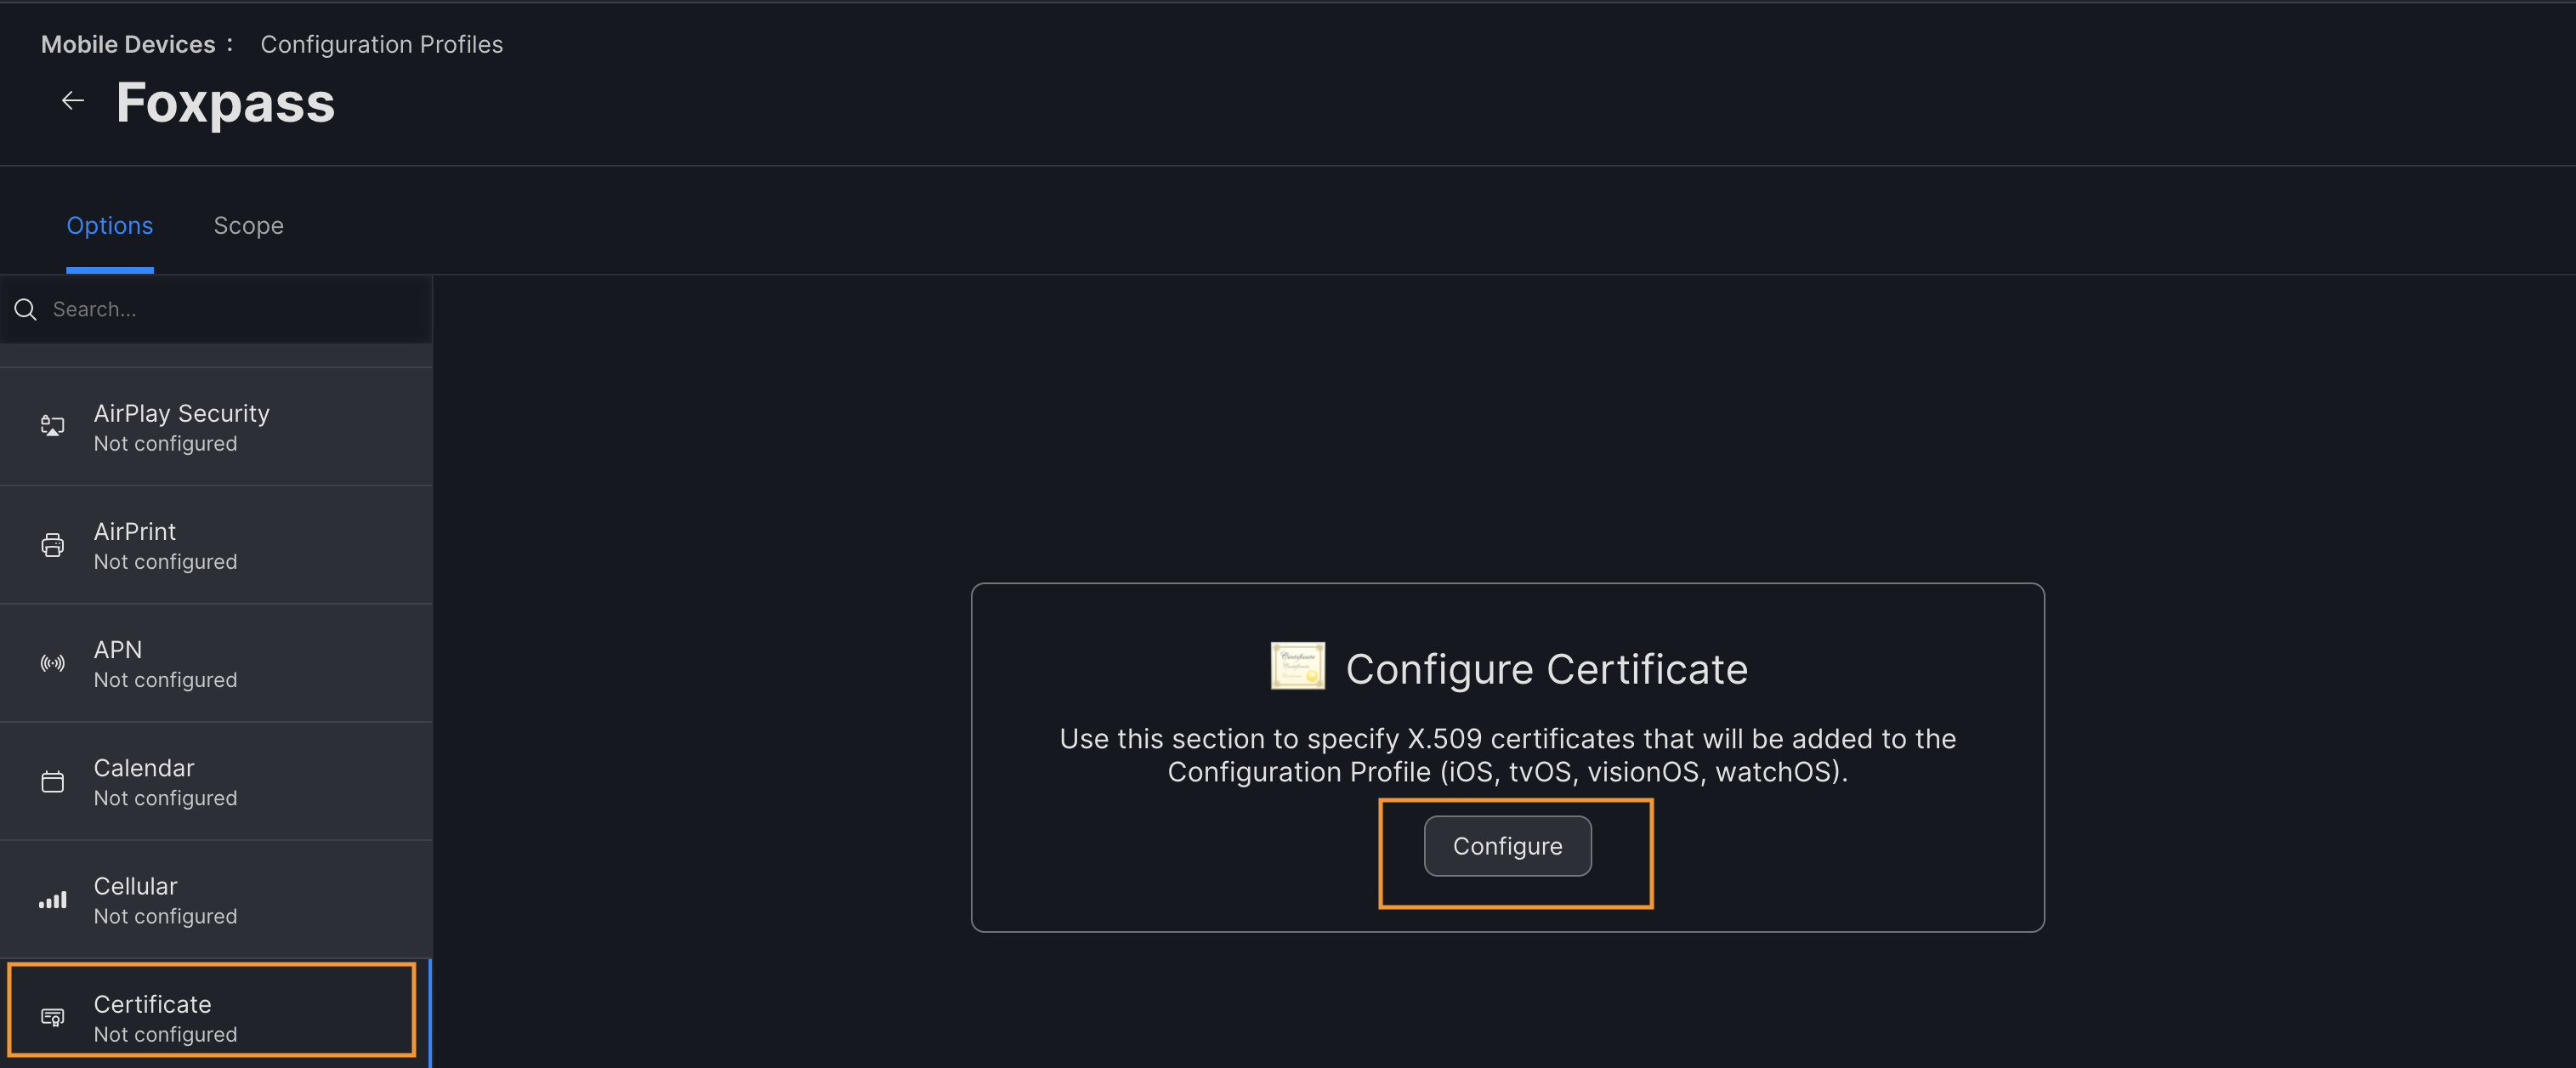 Configure certificate